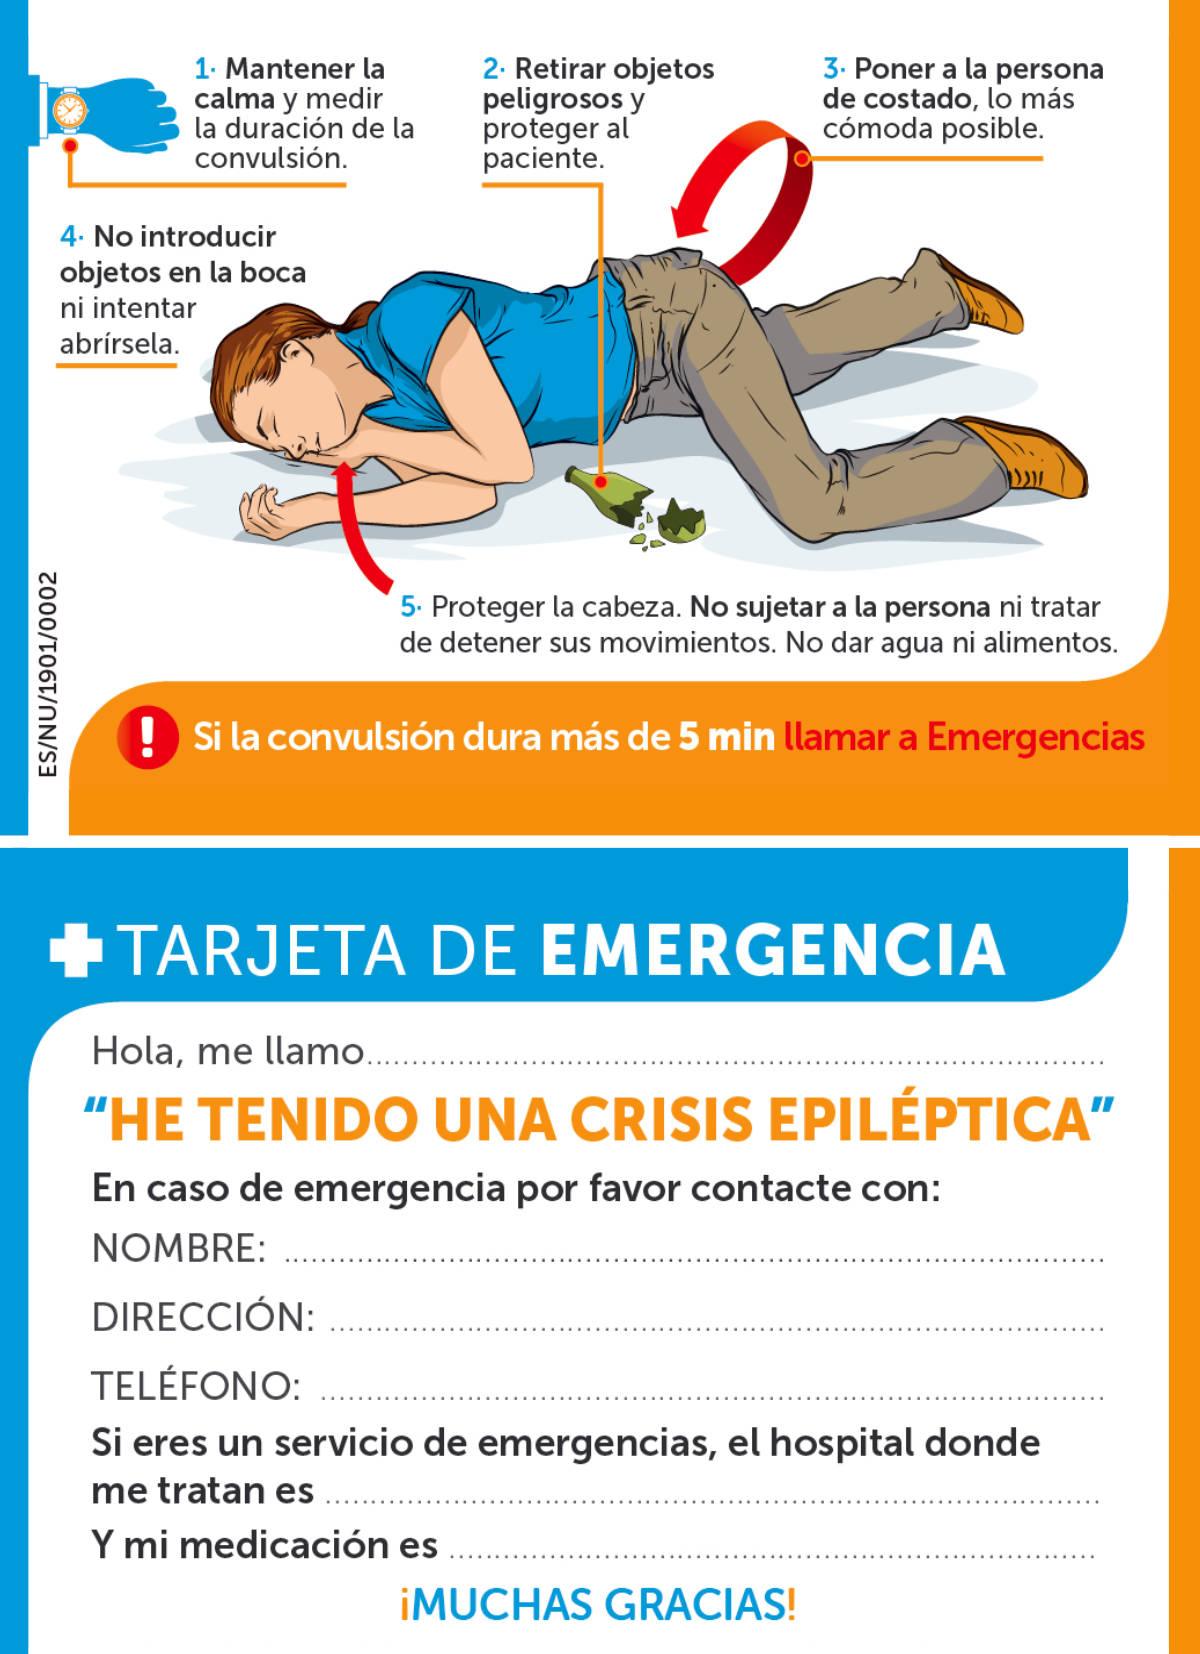 Tarjeta de emergencia en caso de crisis epiléptica